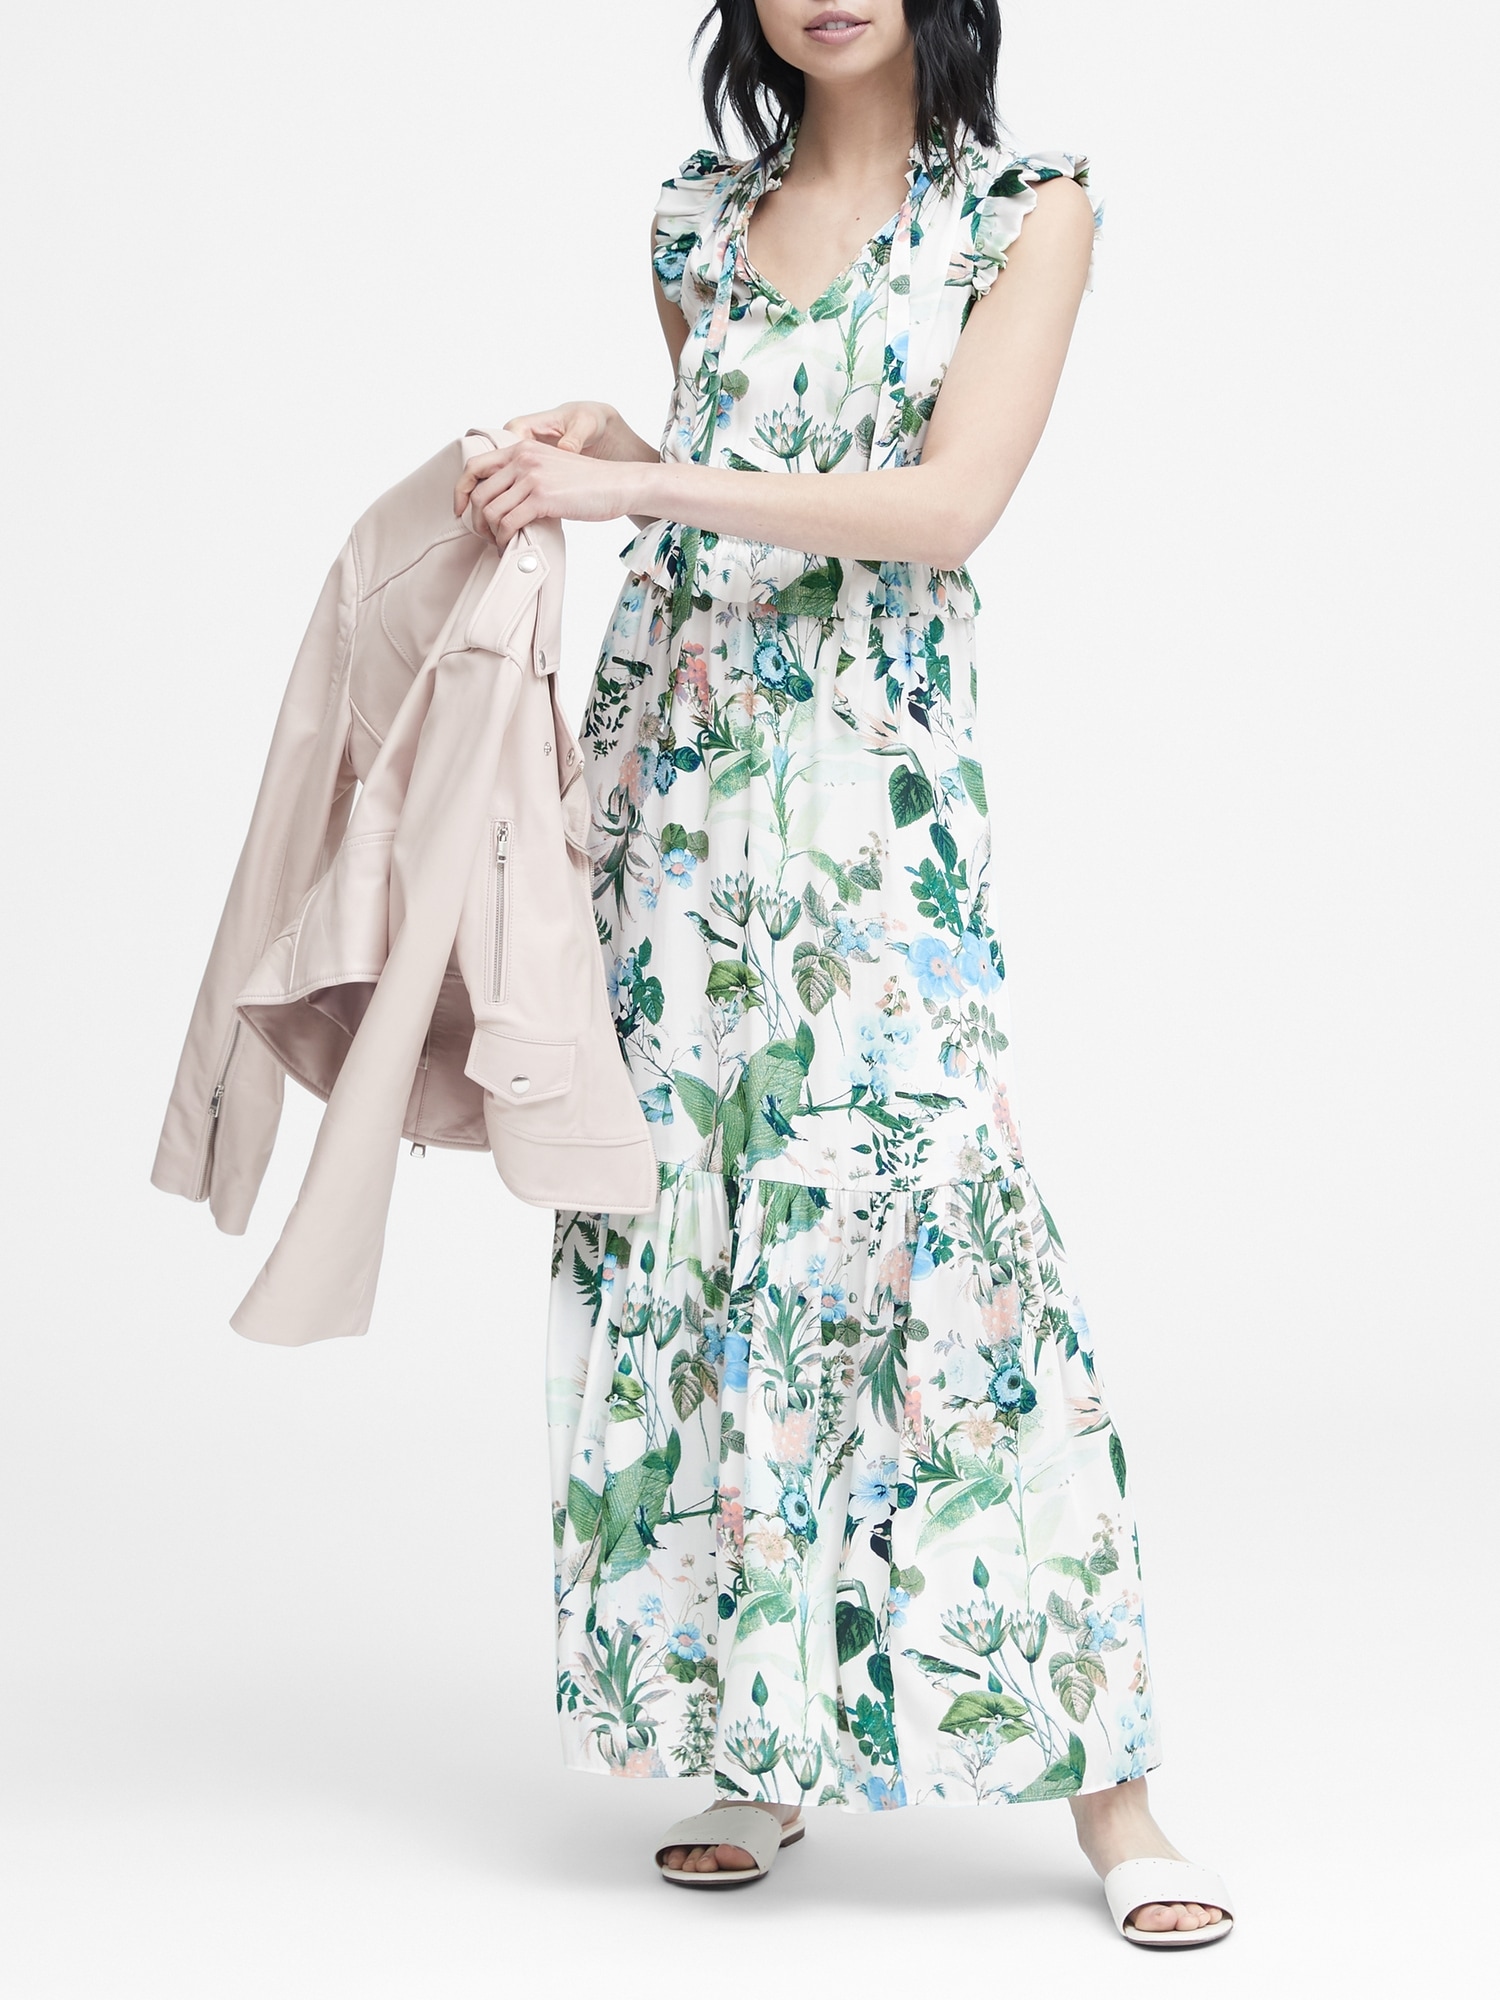 Botanical Print Maxi Dress